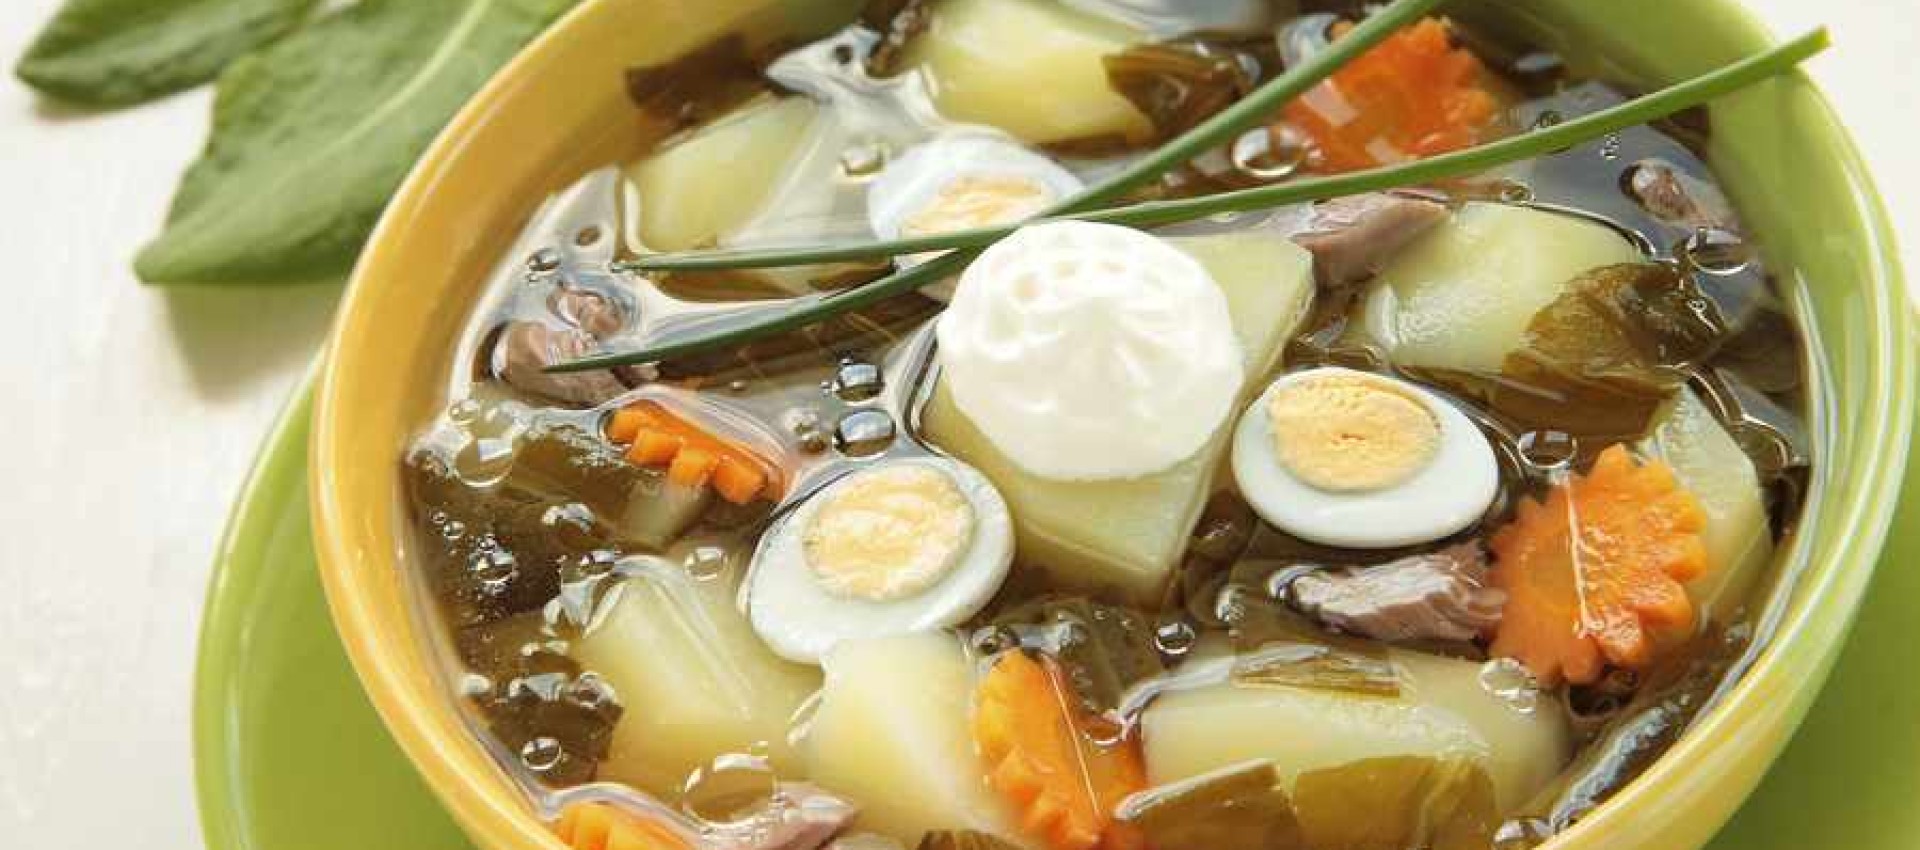 Рецепты борща с щавелем - вкусные и полезные супы